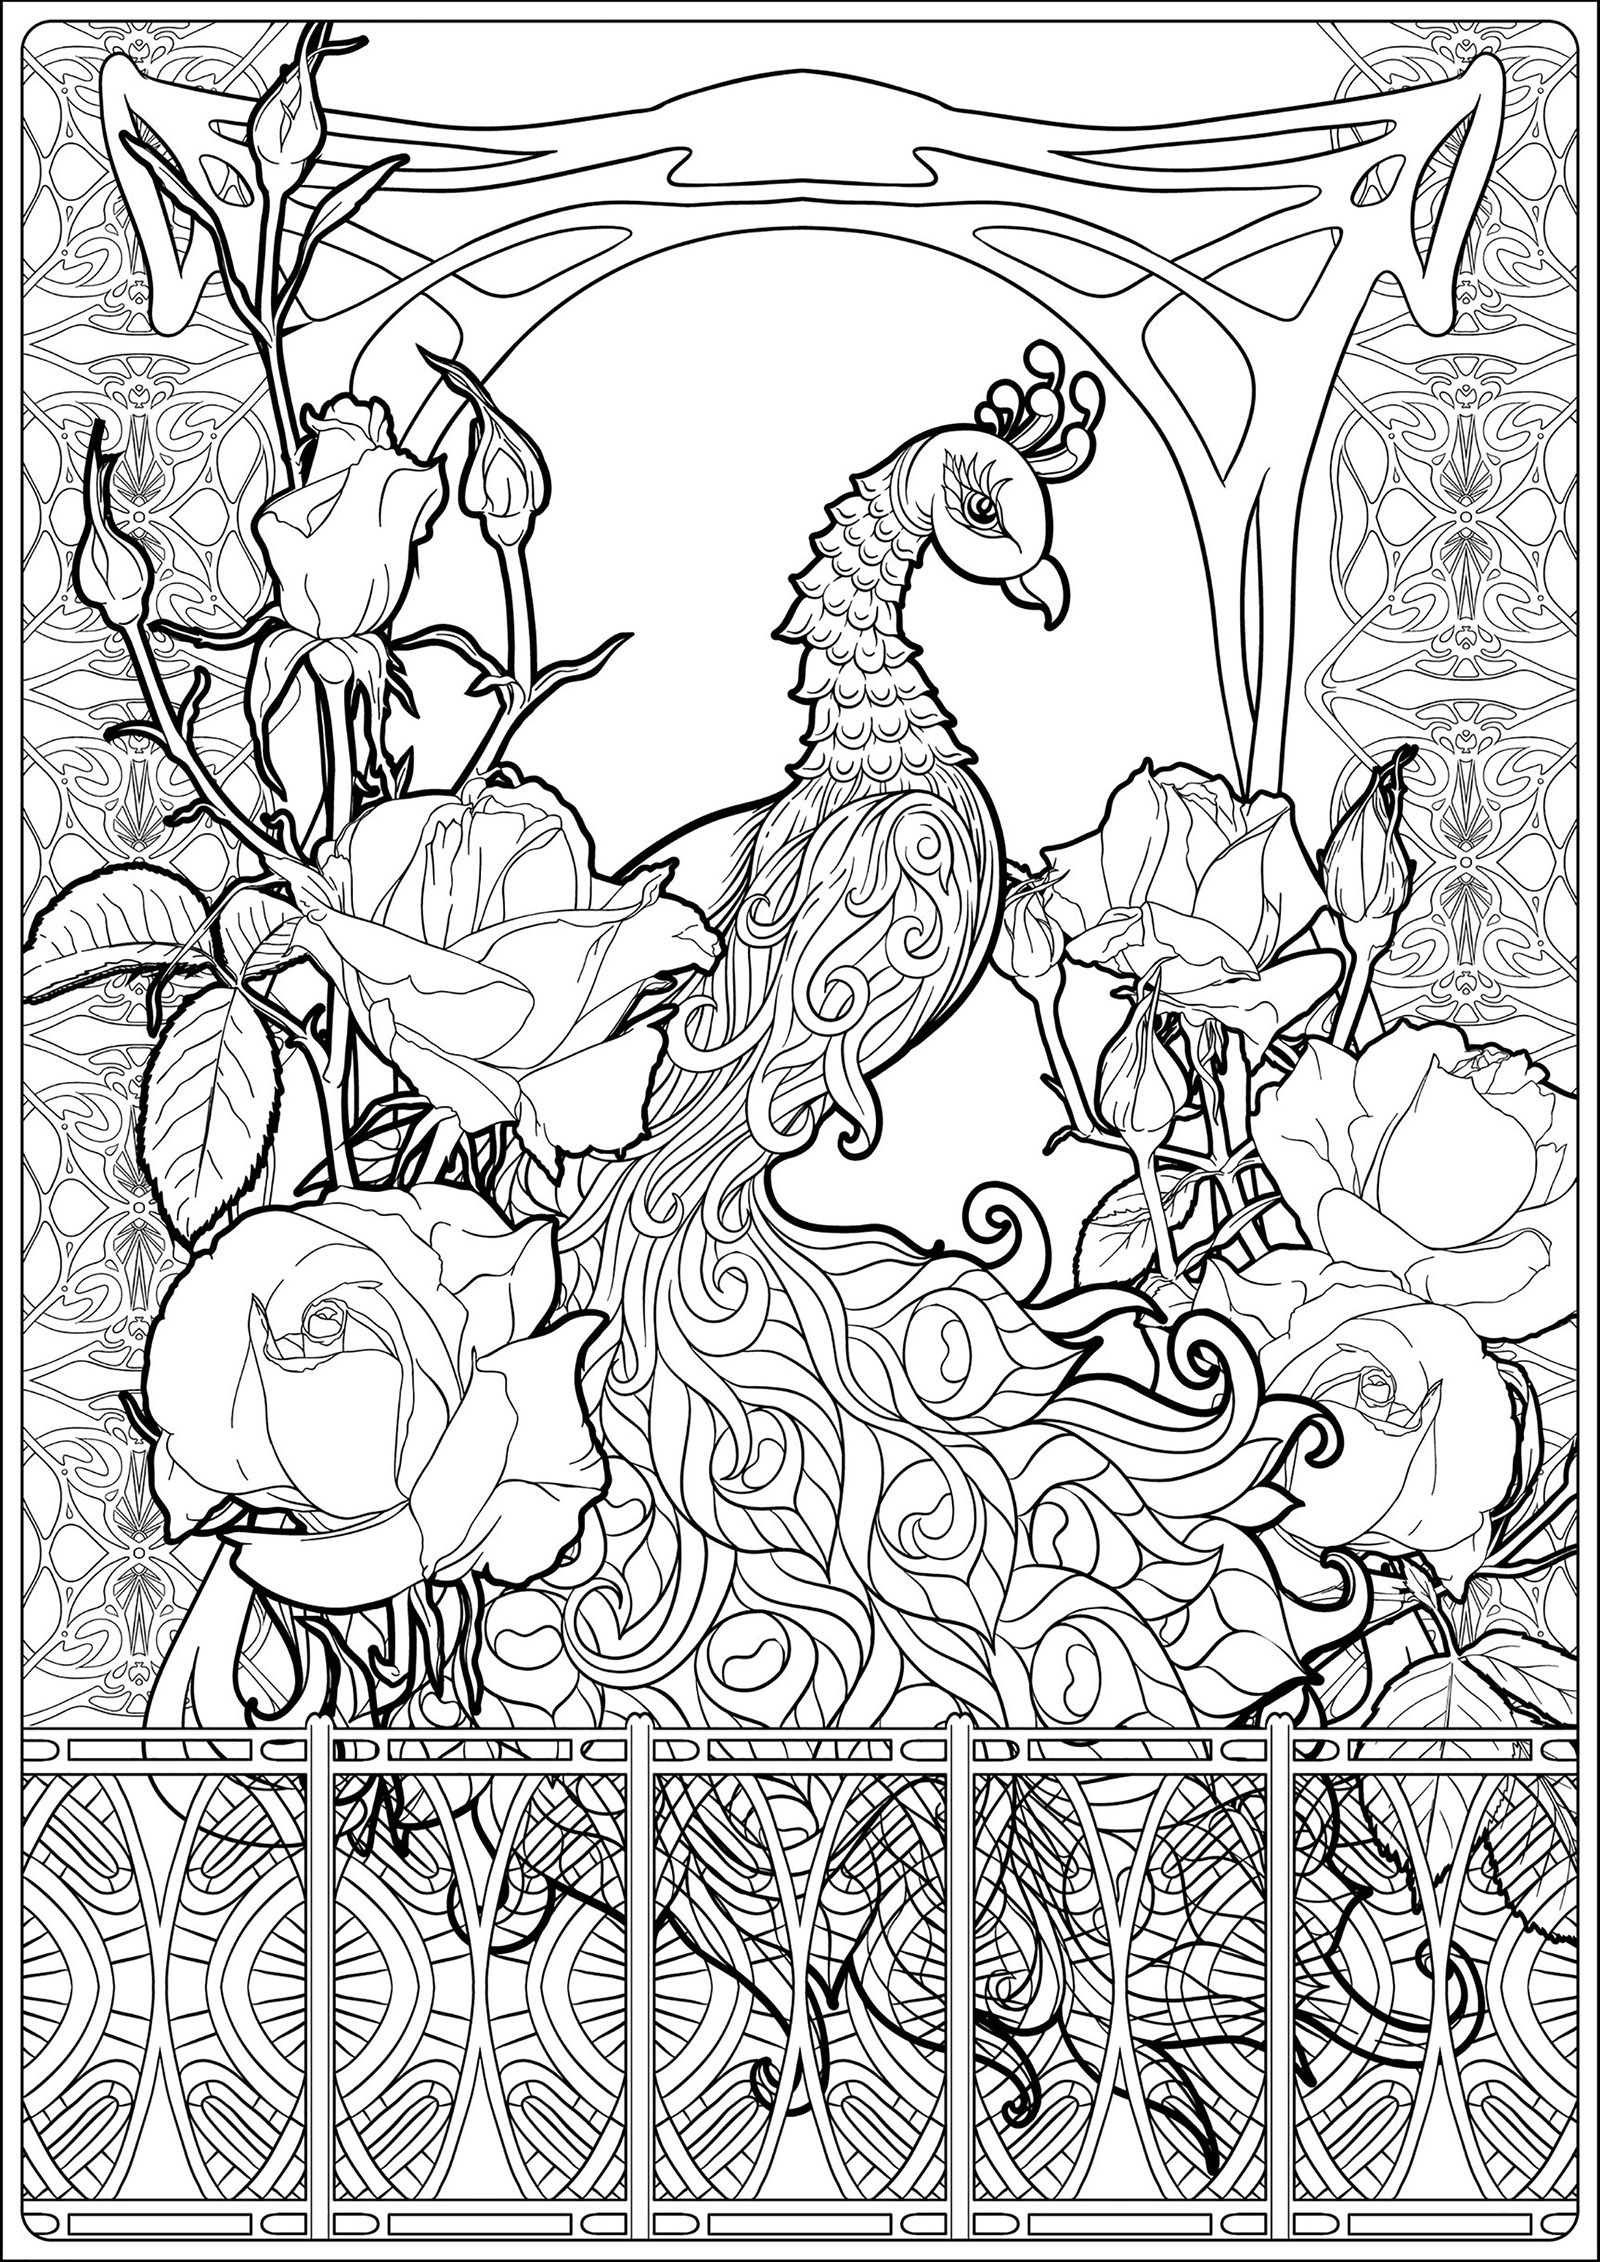 Página para colorear de un pavo real, con muchos elementos gráficos relacionados con el Art Nouveau y bonitas rosas, Origen : 123rf   Artista : Helenlane